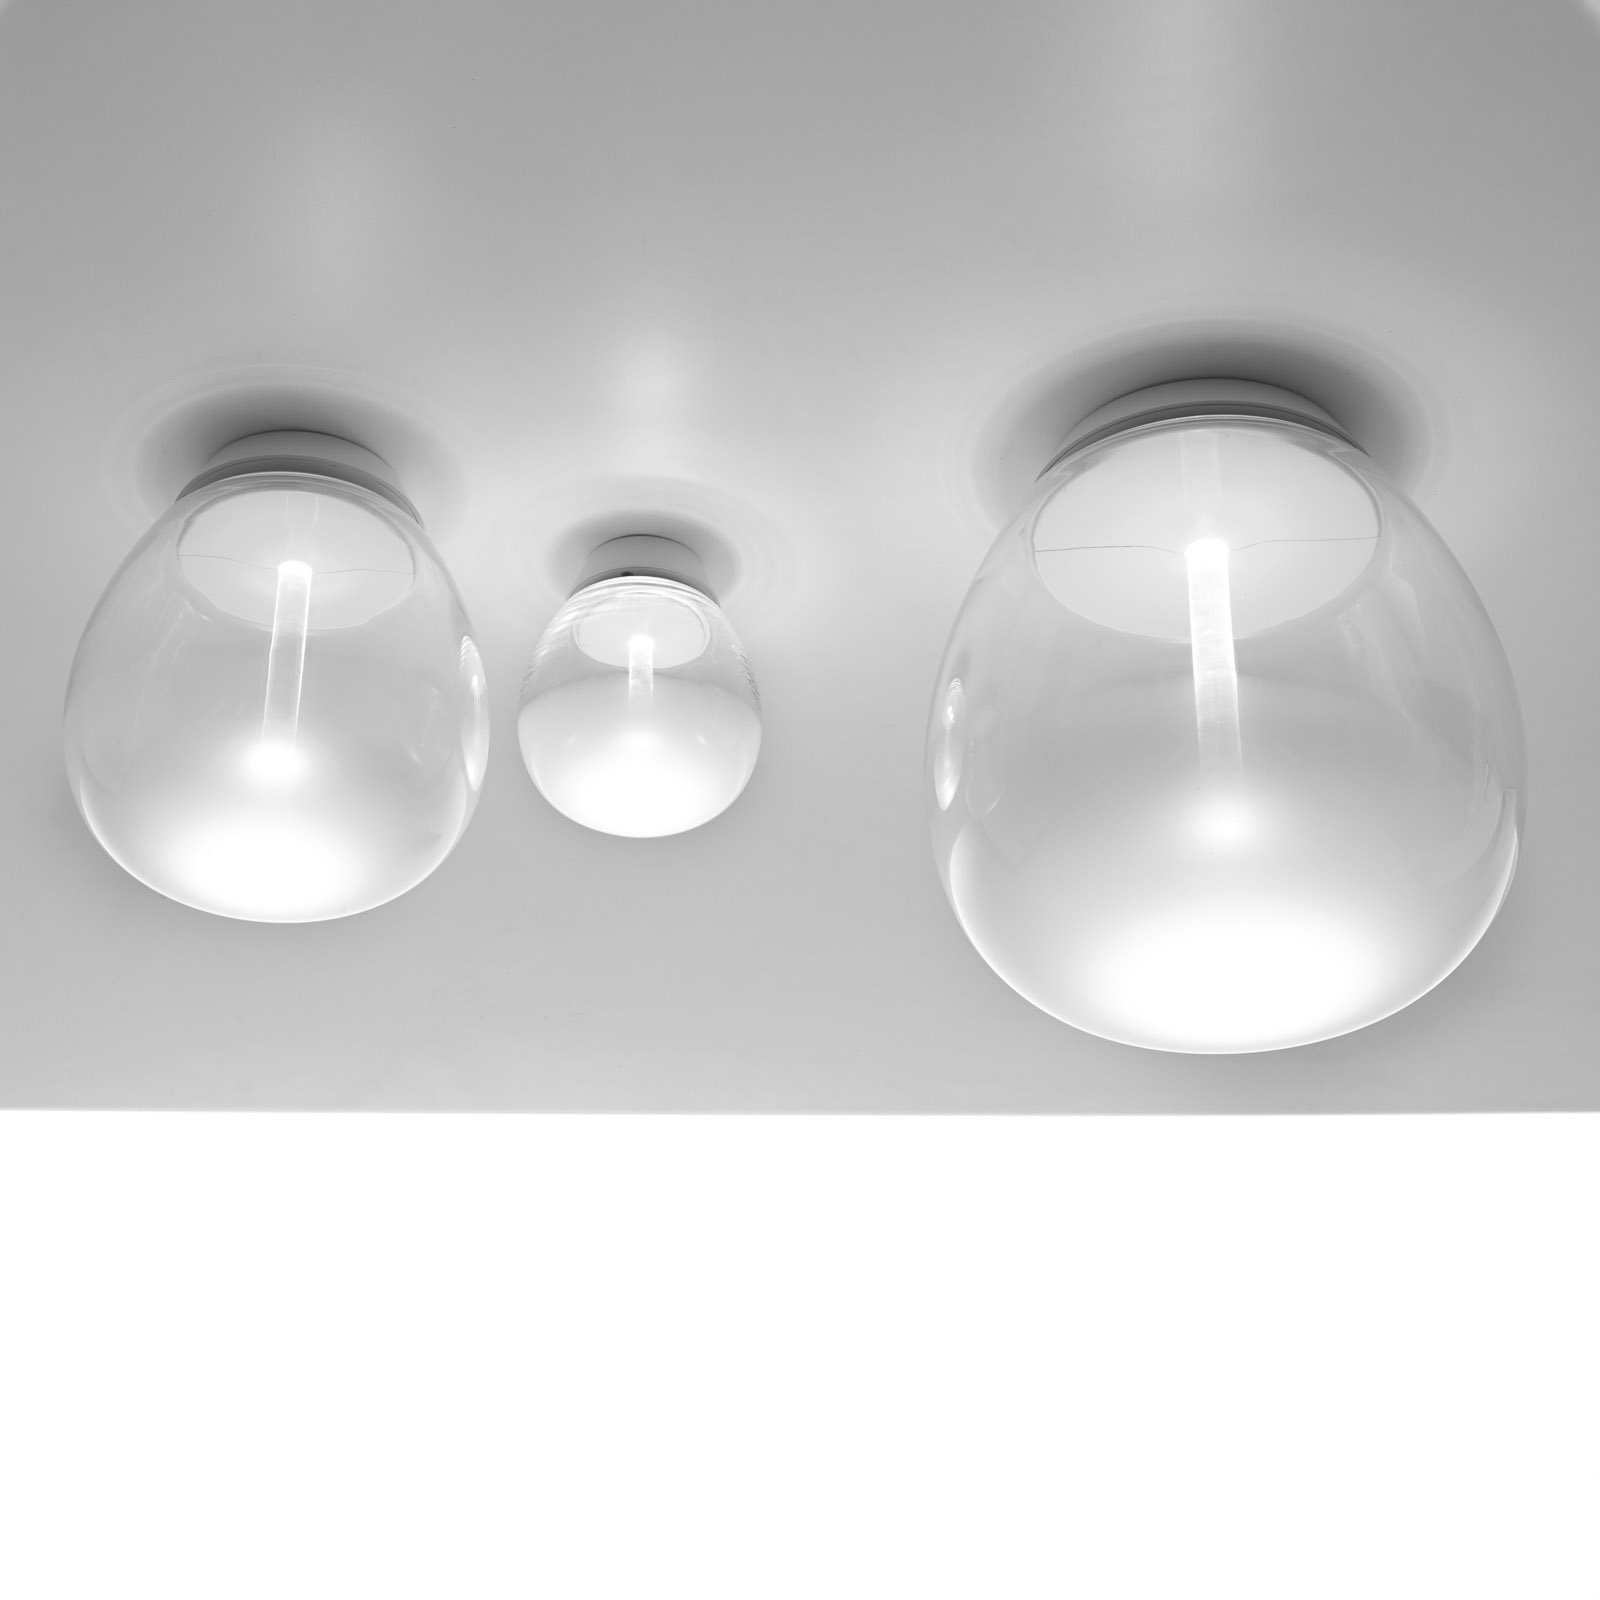 Φωτιστικό οροφής Artemide Empatia LED, Ø 16 cm